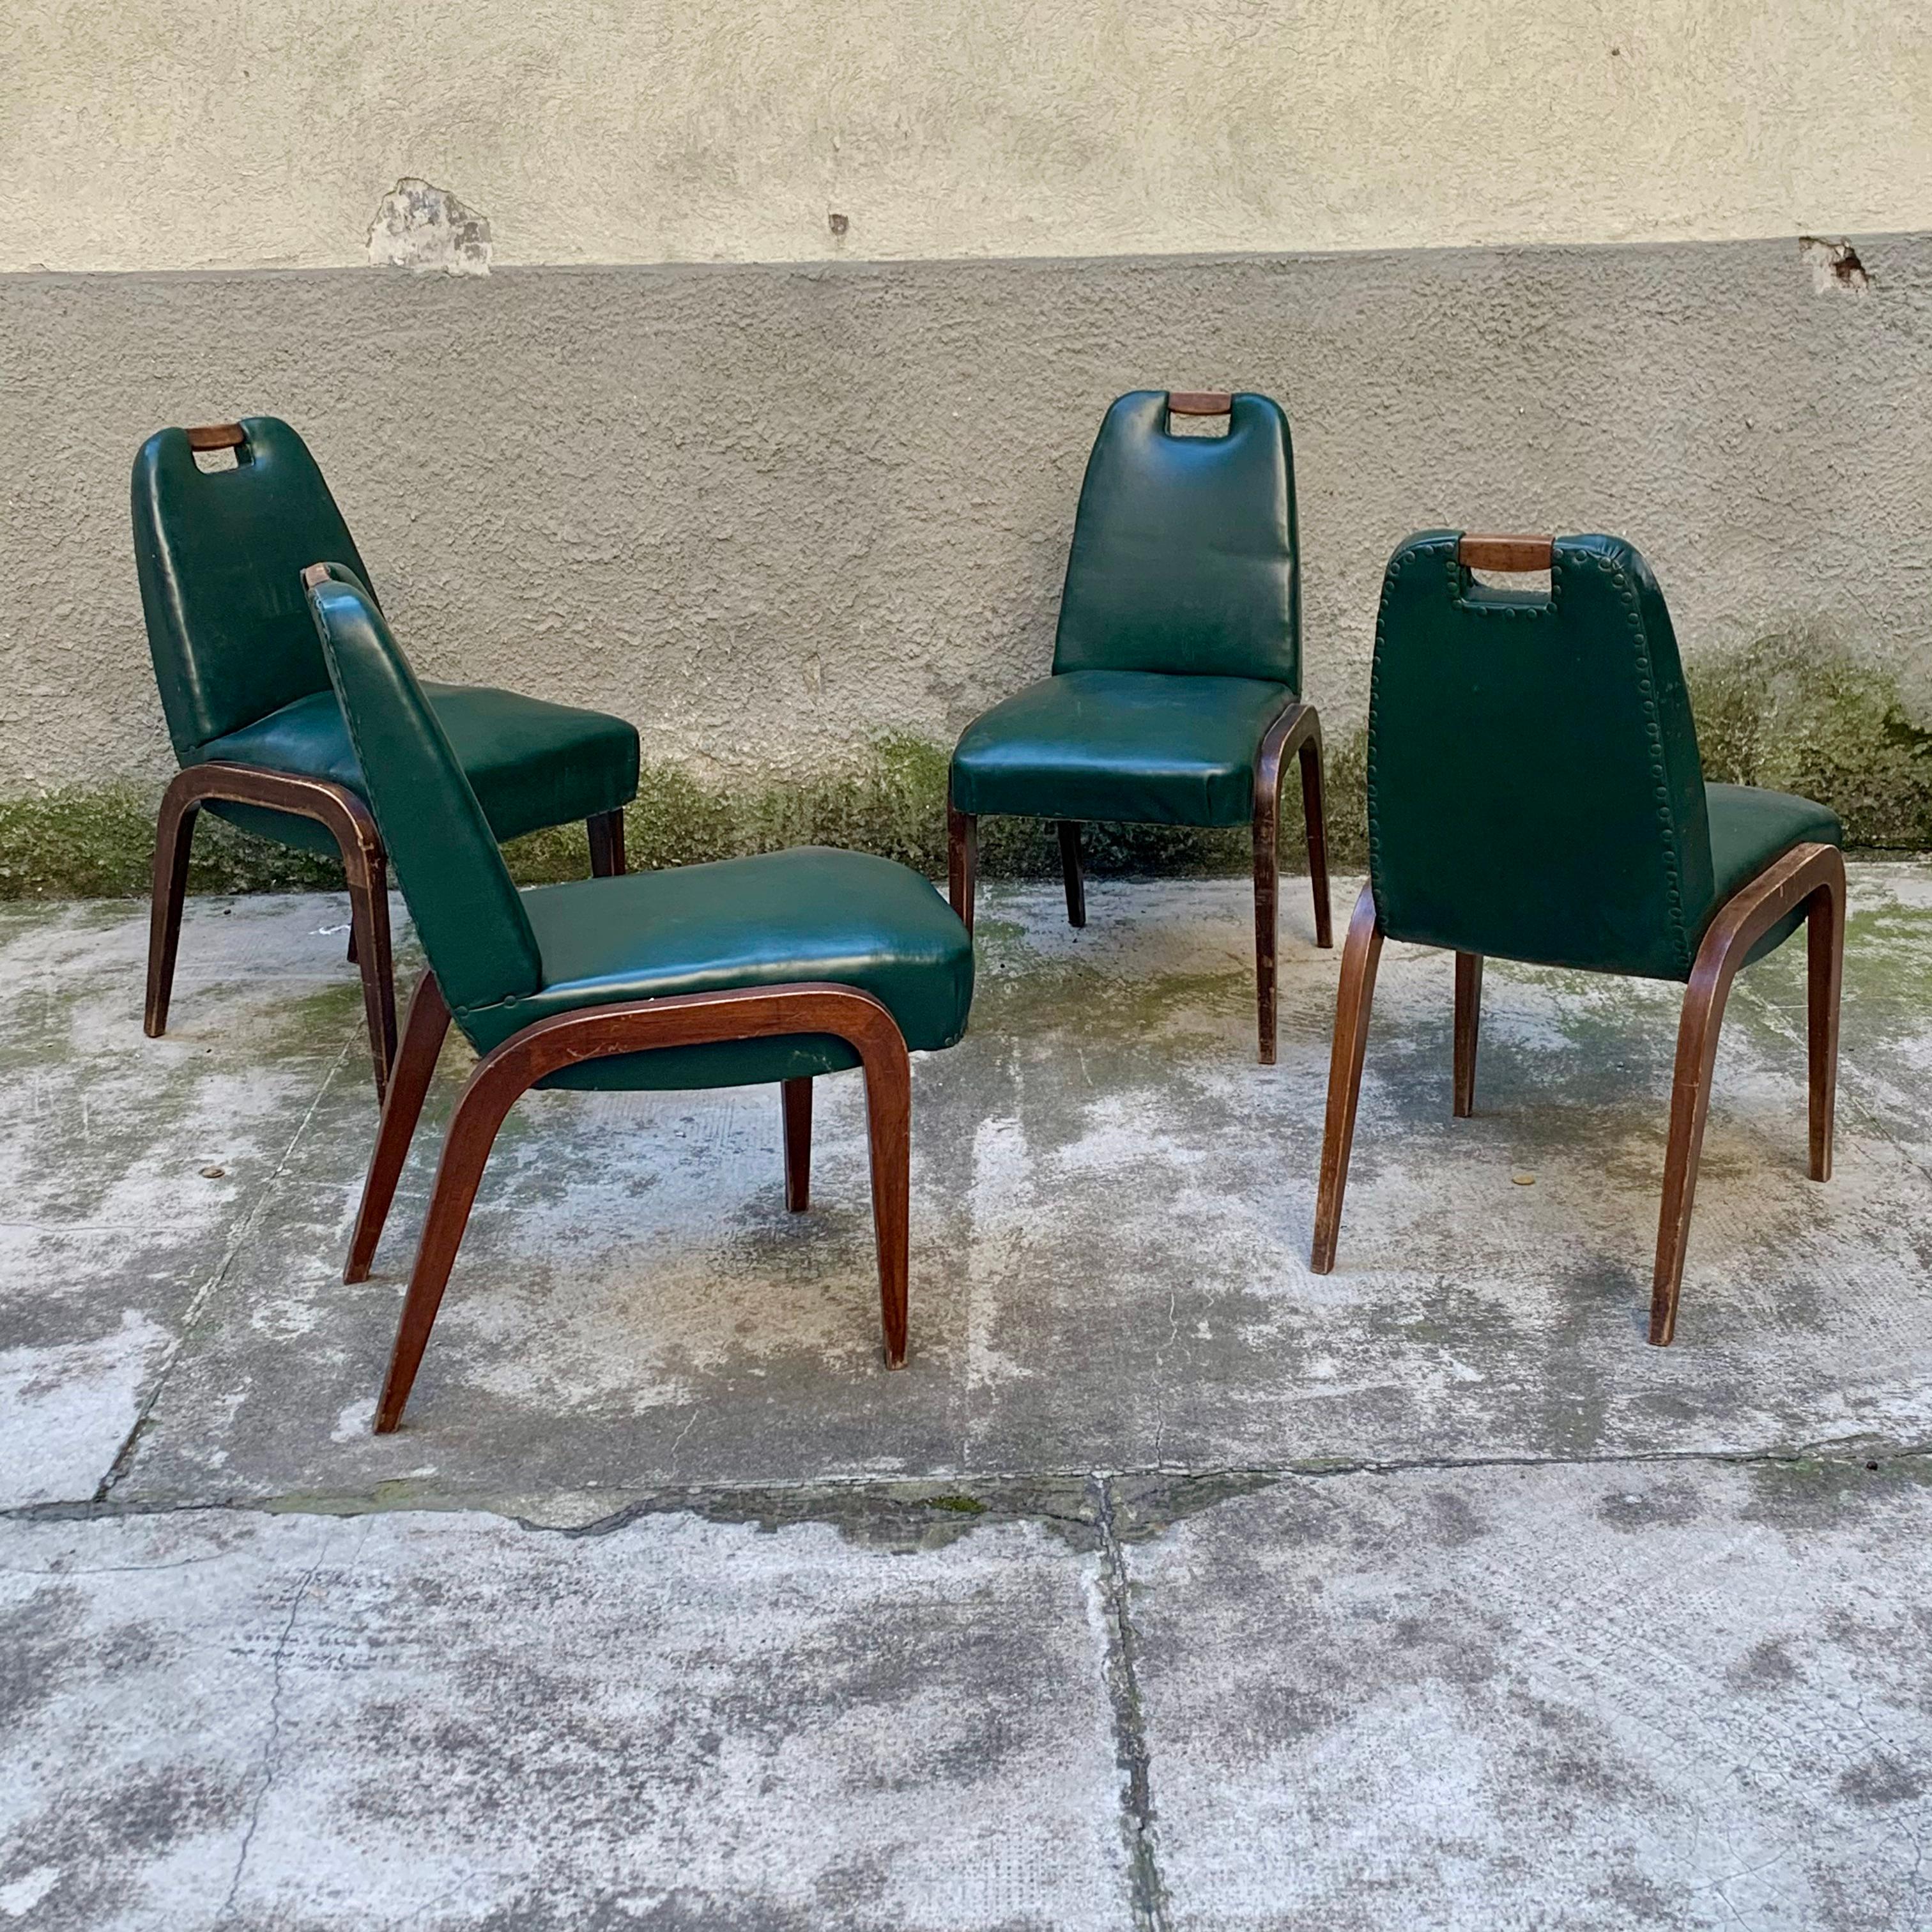 Ces chaises sont caractérisées par une poignée en bois sur le dossier et des pieds sur le côté. Elles sont recouvertes d'un cuir vinyle vert, toujours d'origine.
